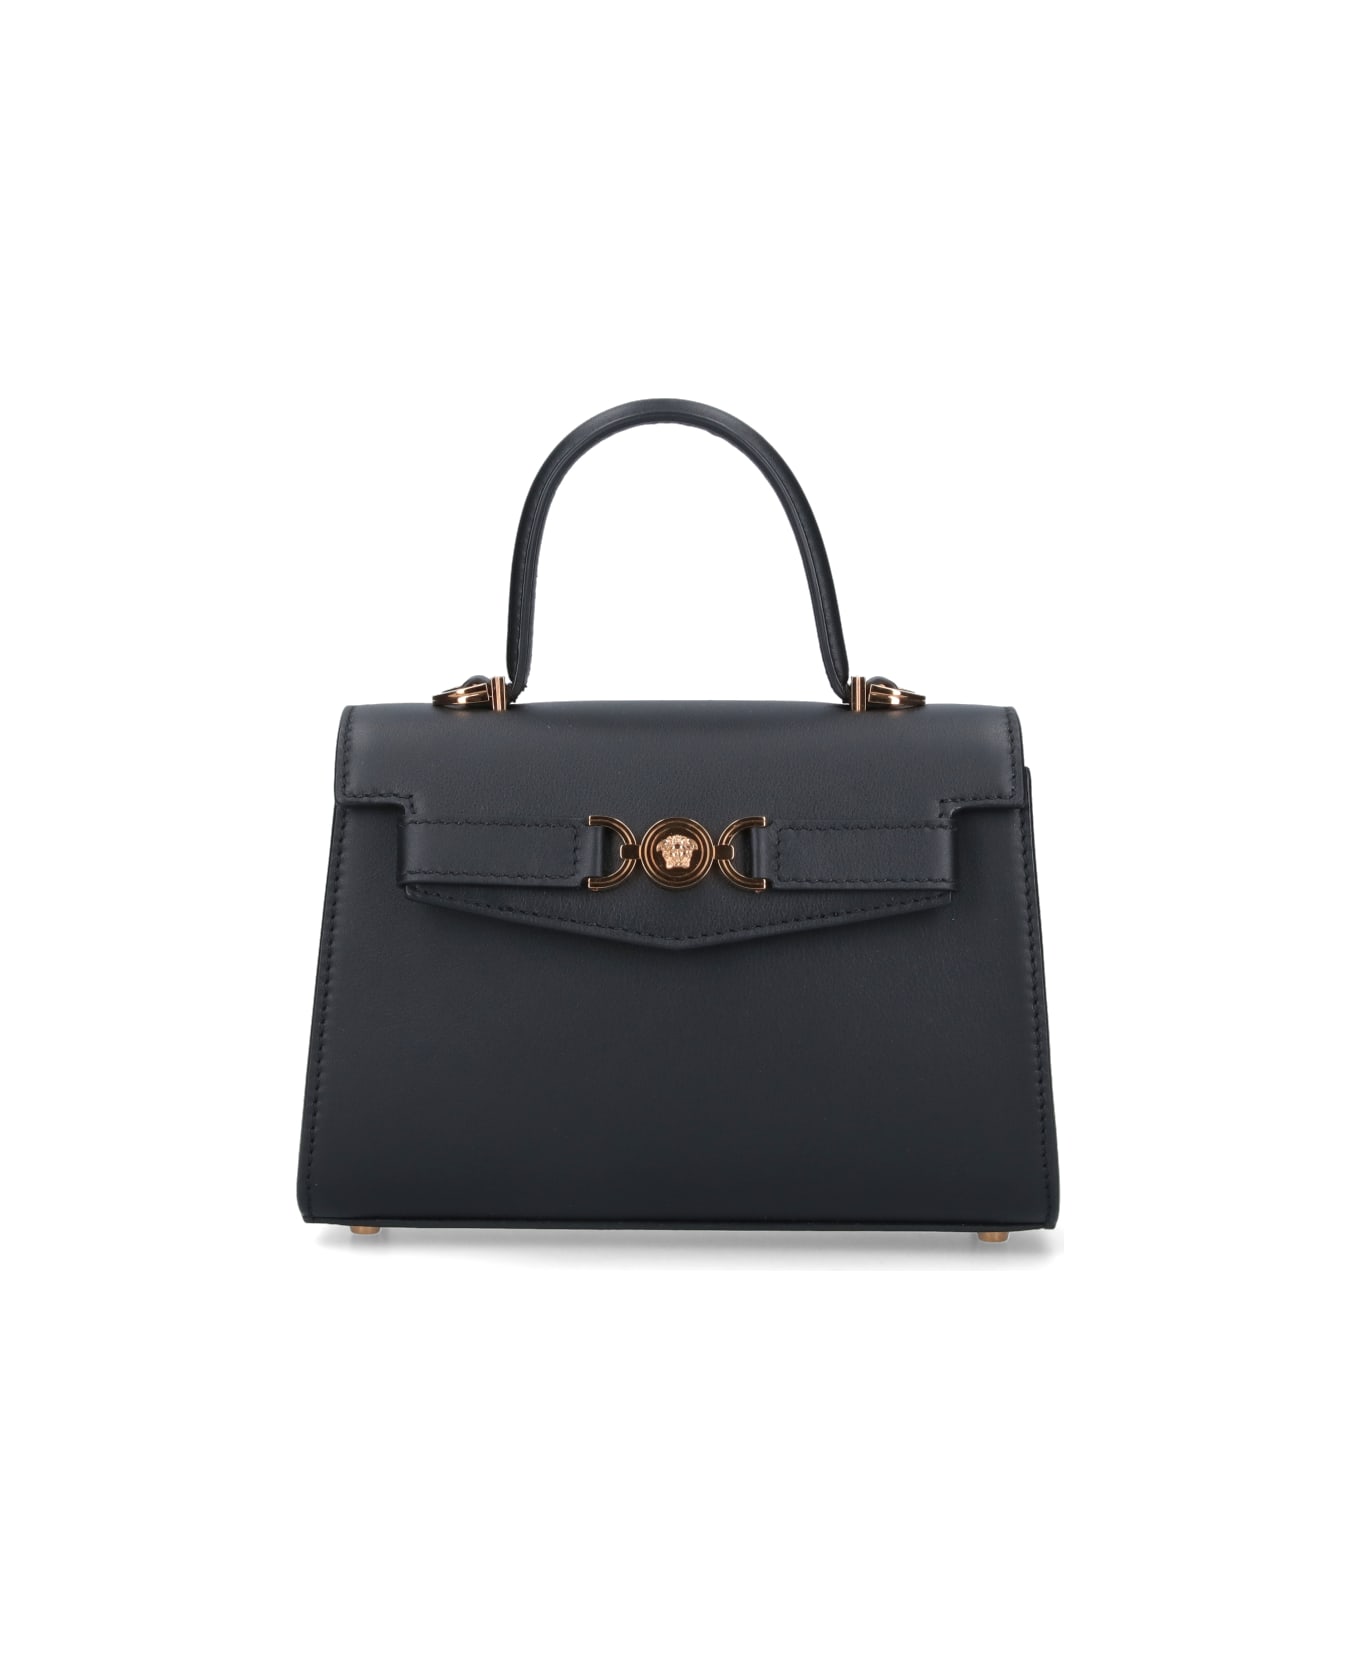 Versace 'medusa '95' Small Handbag - Black   トートバッグ